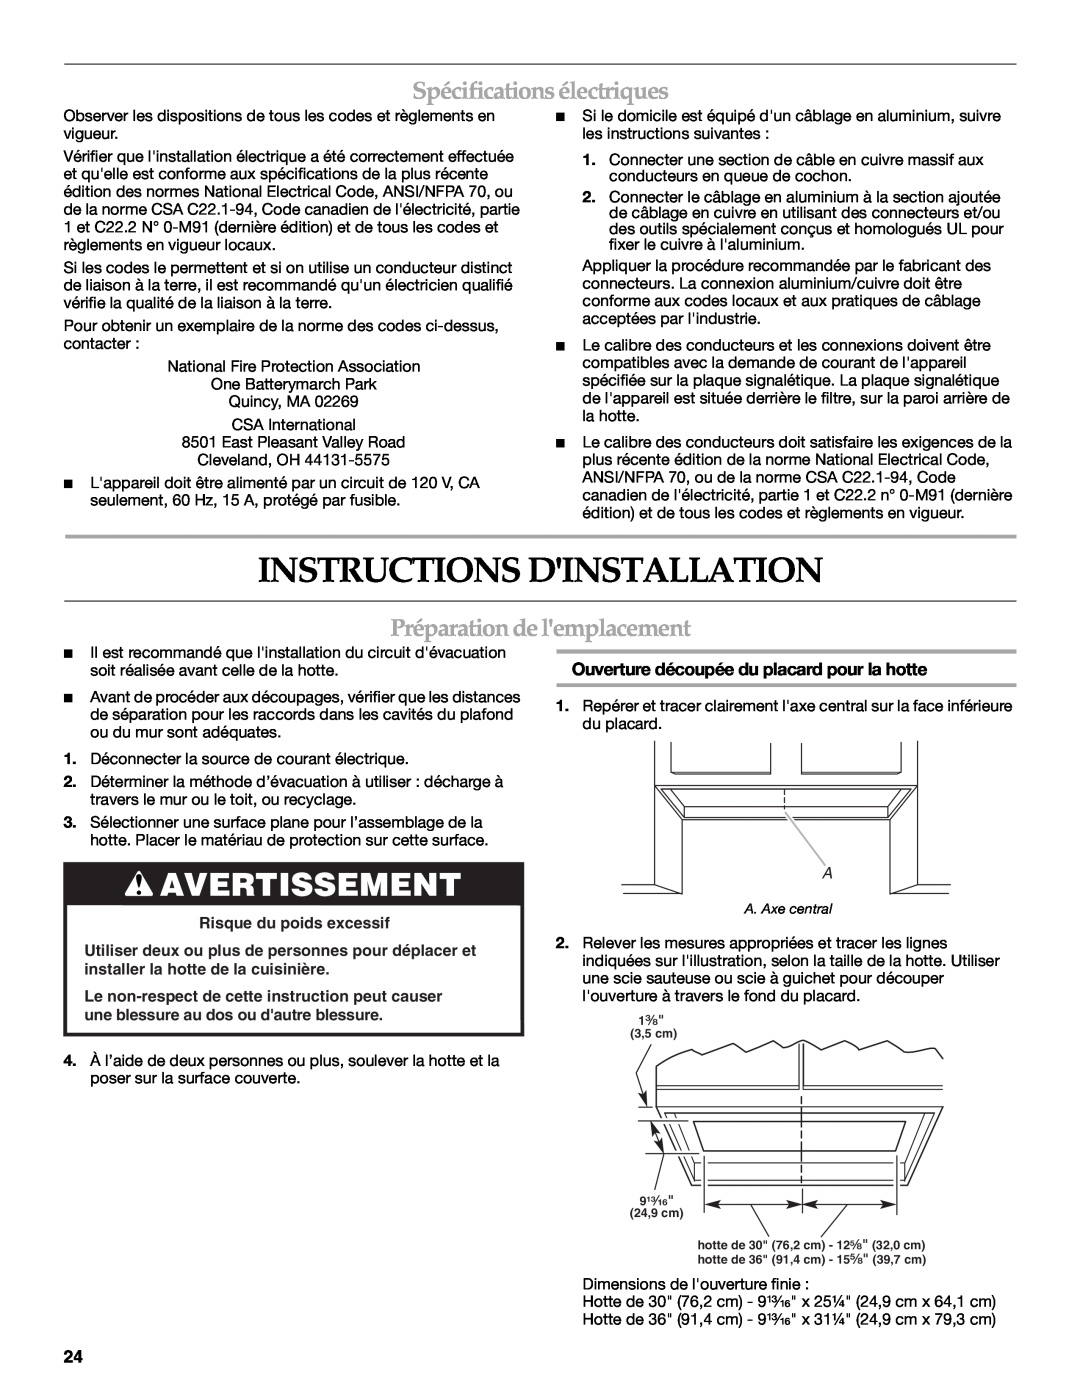 KitchenAid W10267109C Instructions Dinstallation, Avertissement, Spécifications électriques, Préparationdelemplacement 